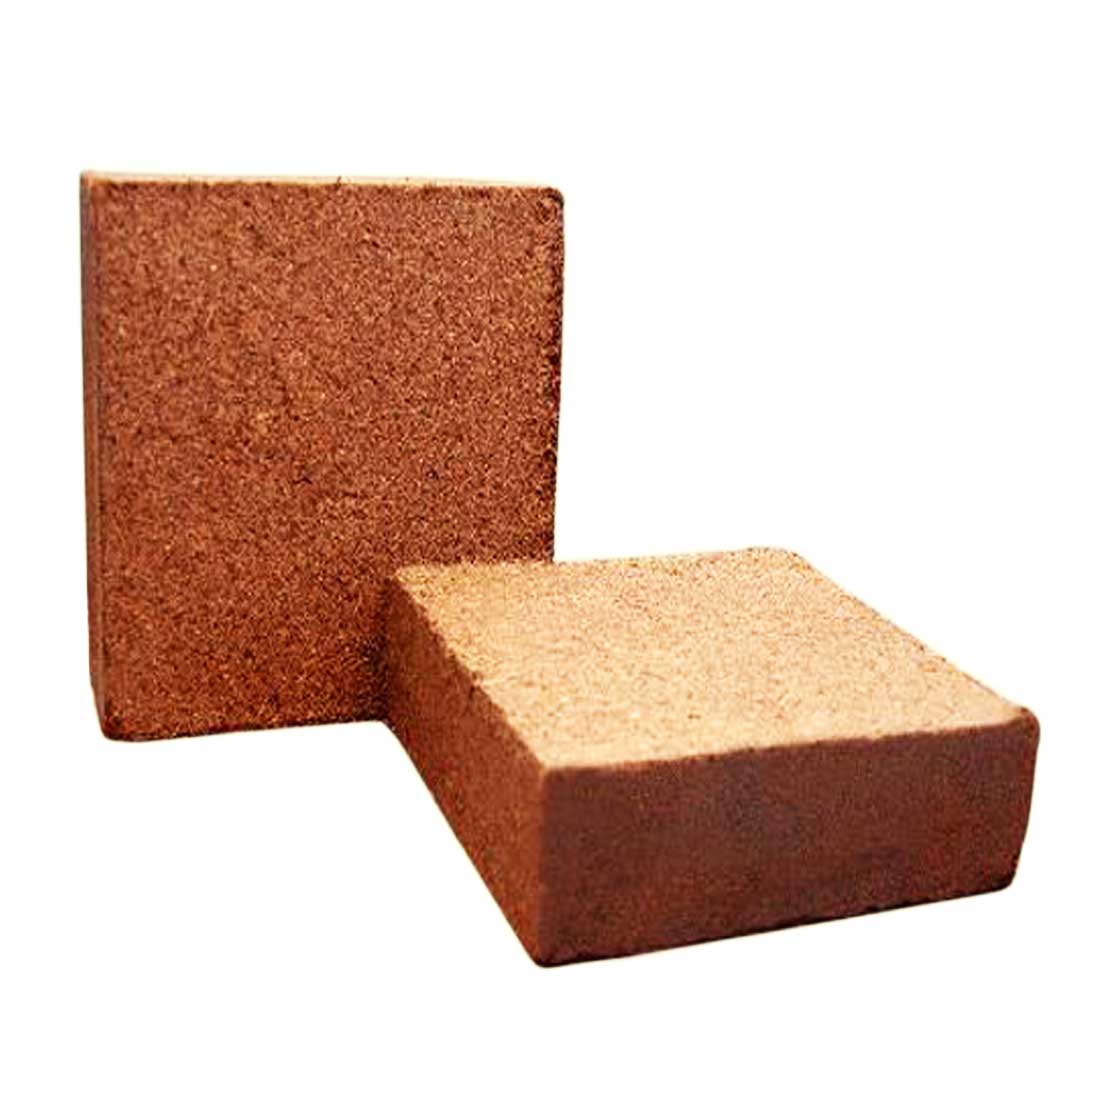 COCO Peat Blocks